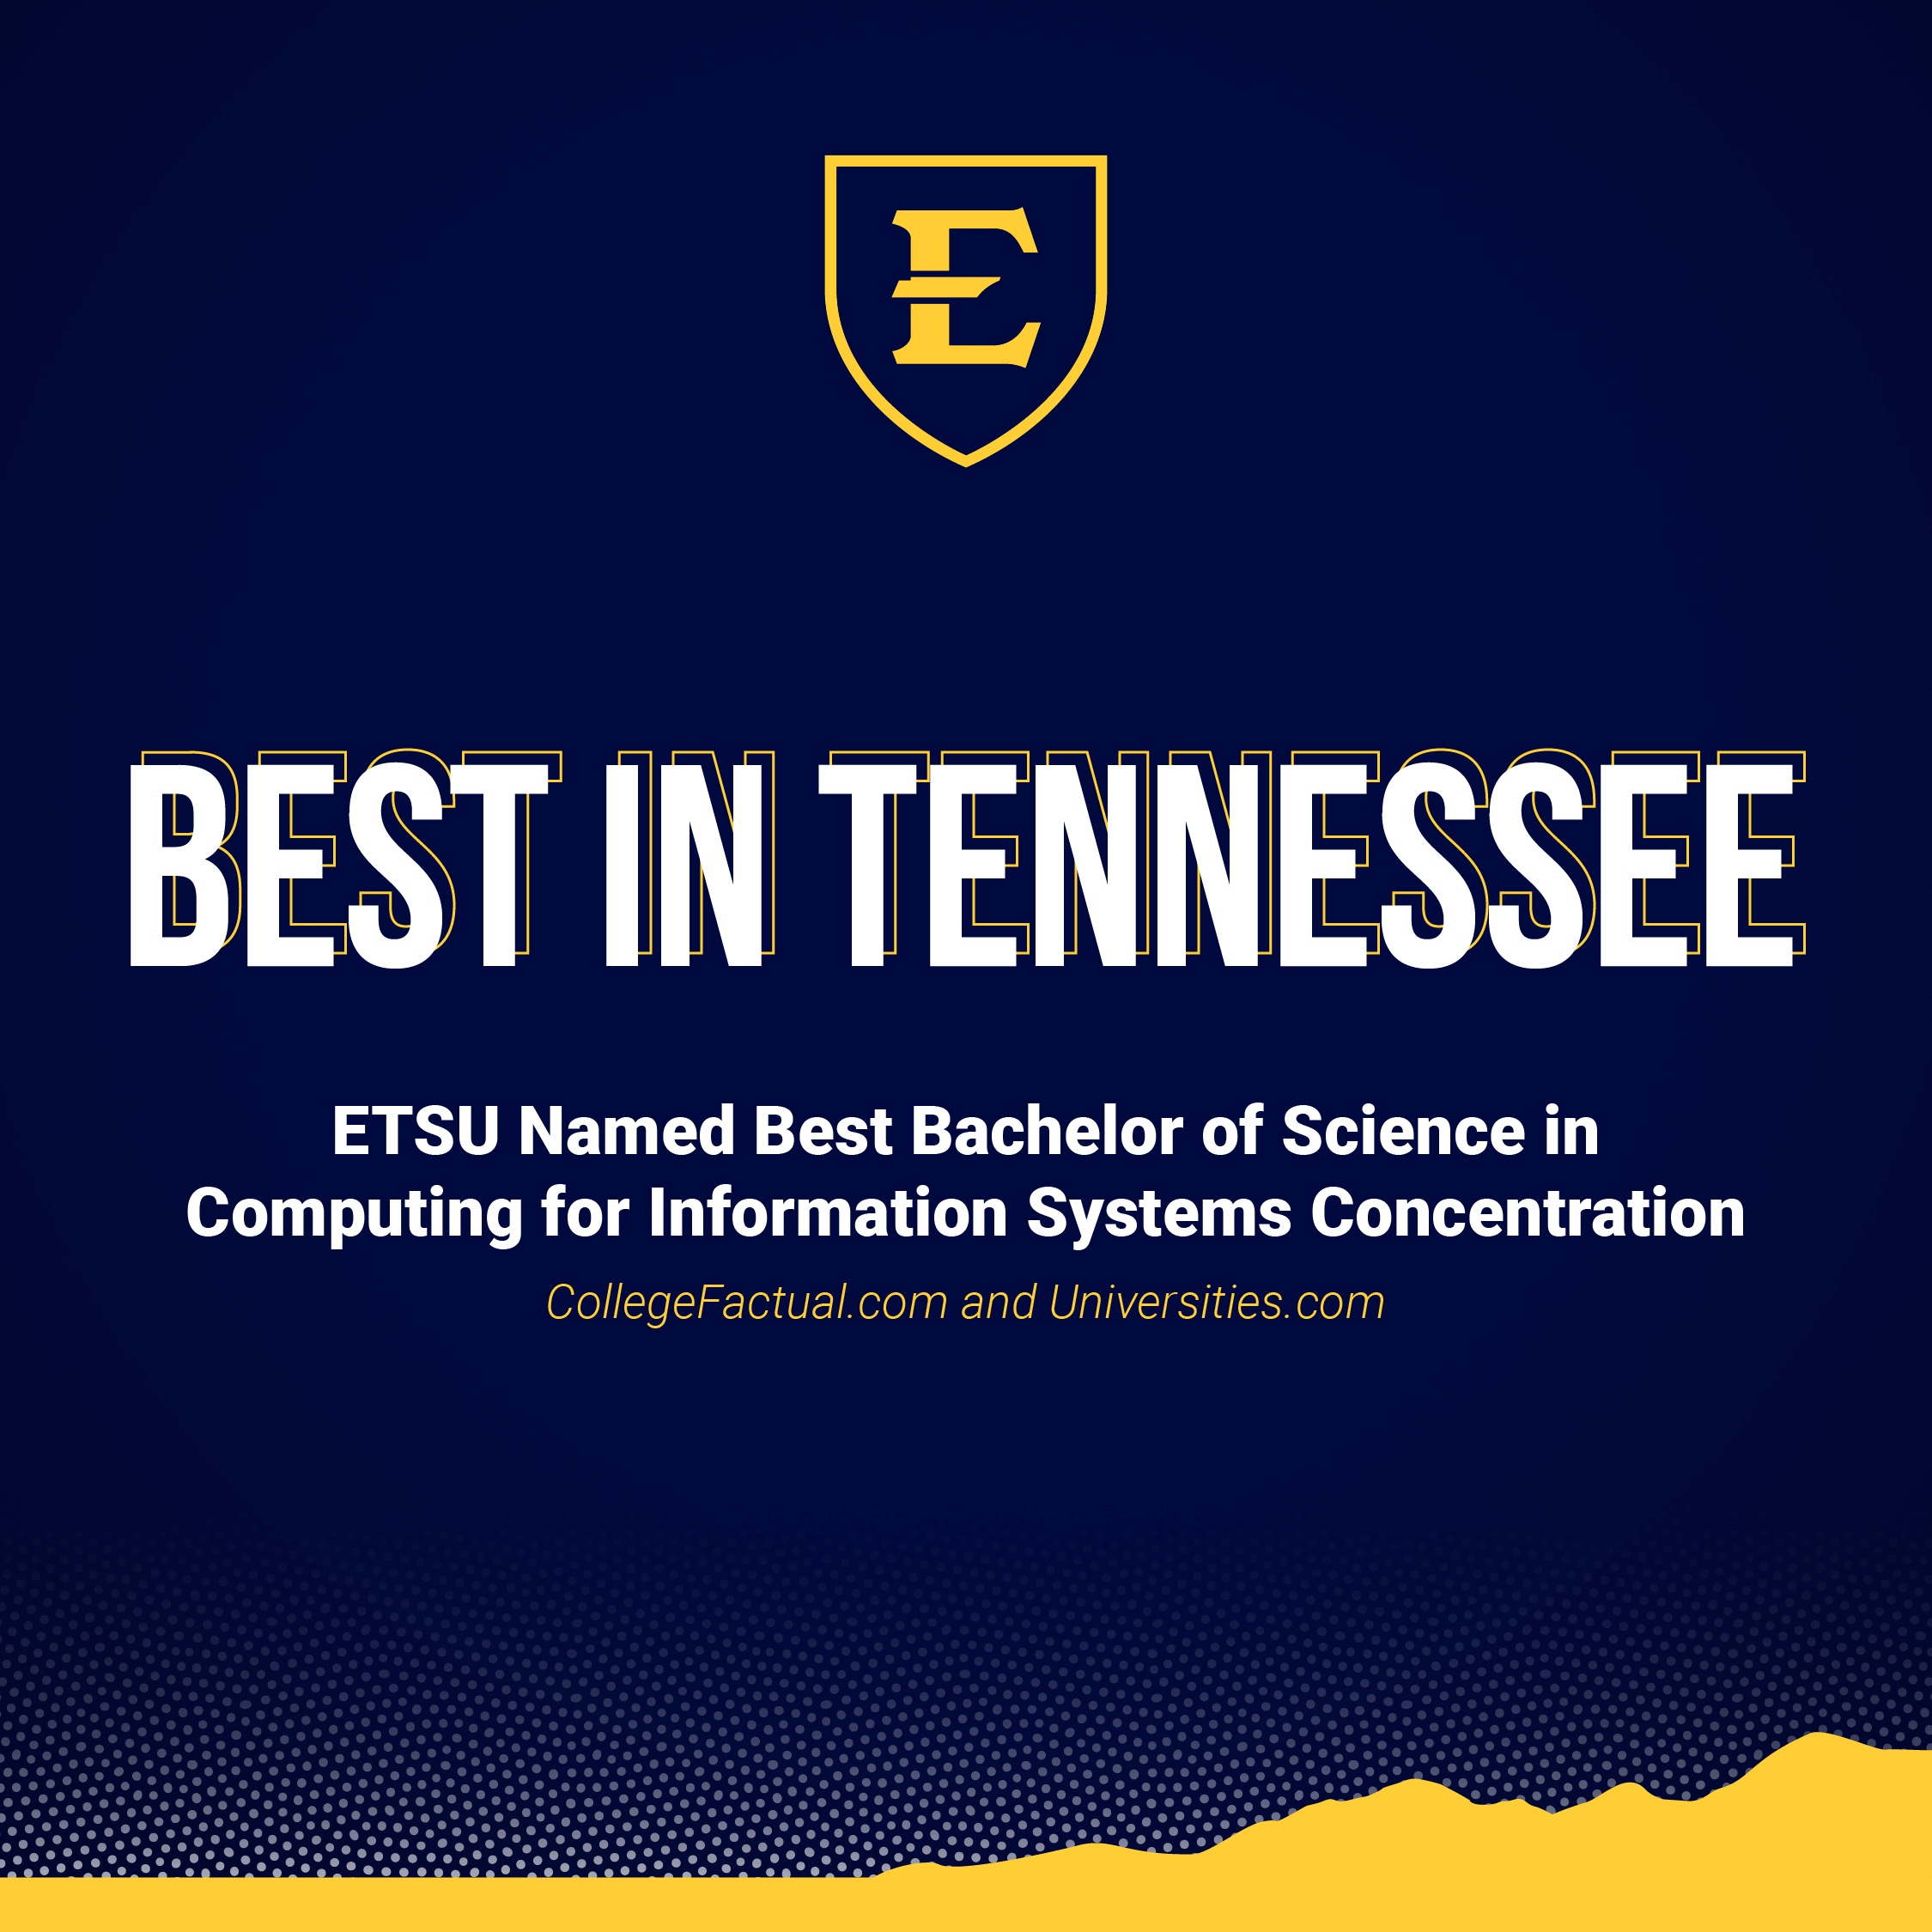 ETSU Computing Program - Best in Tennessee 